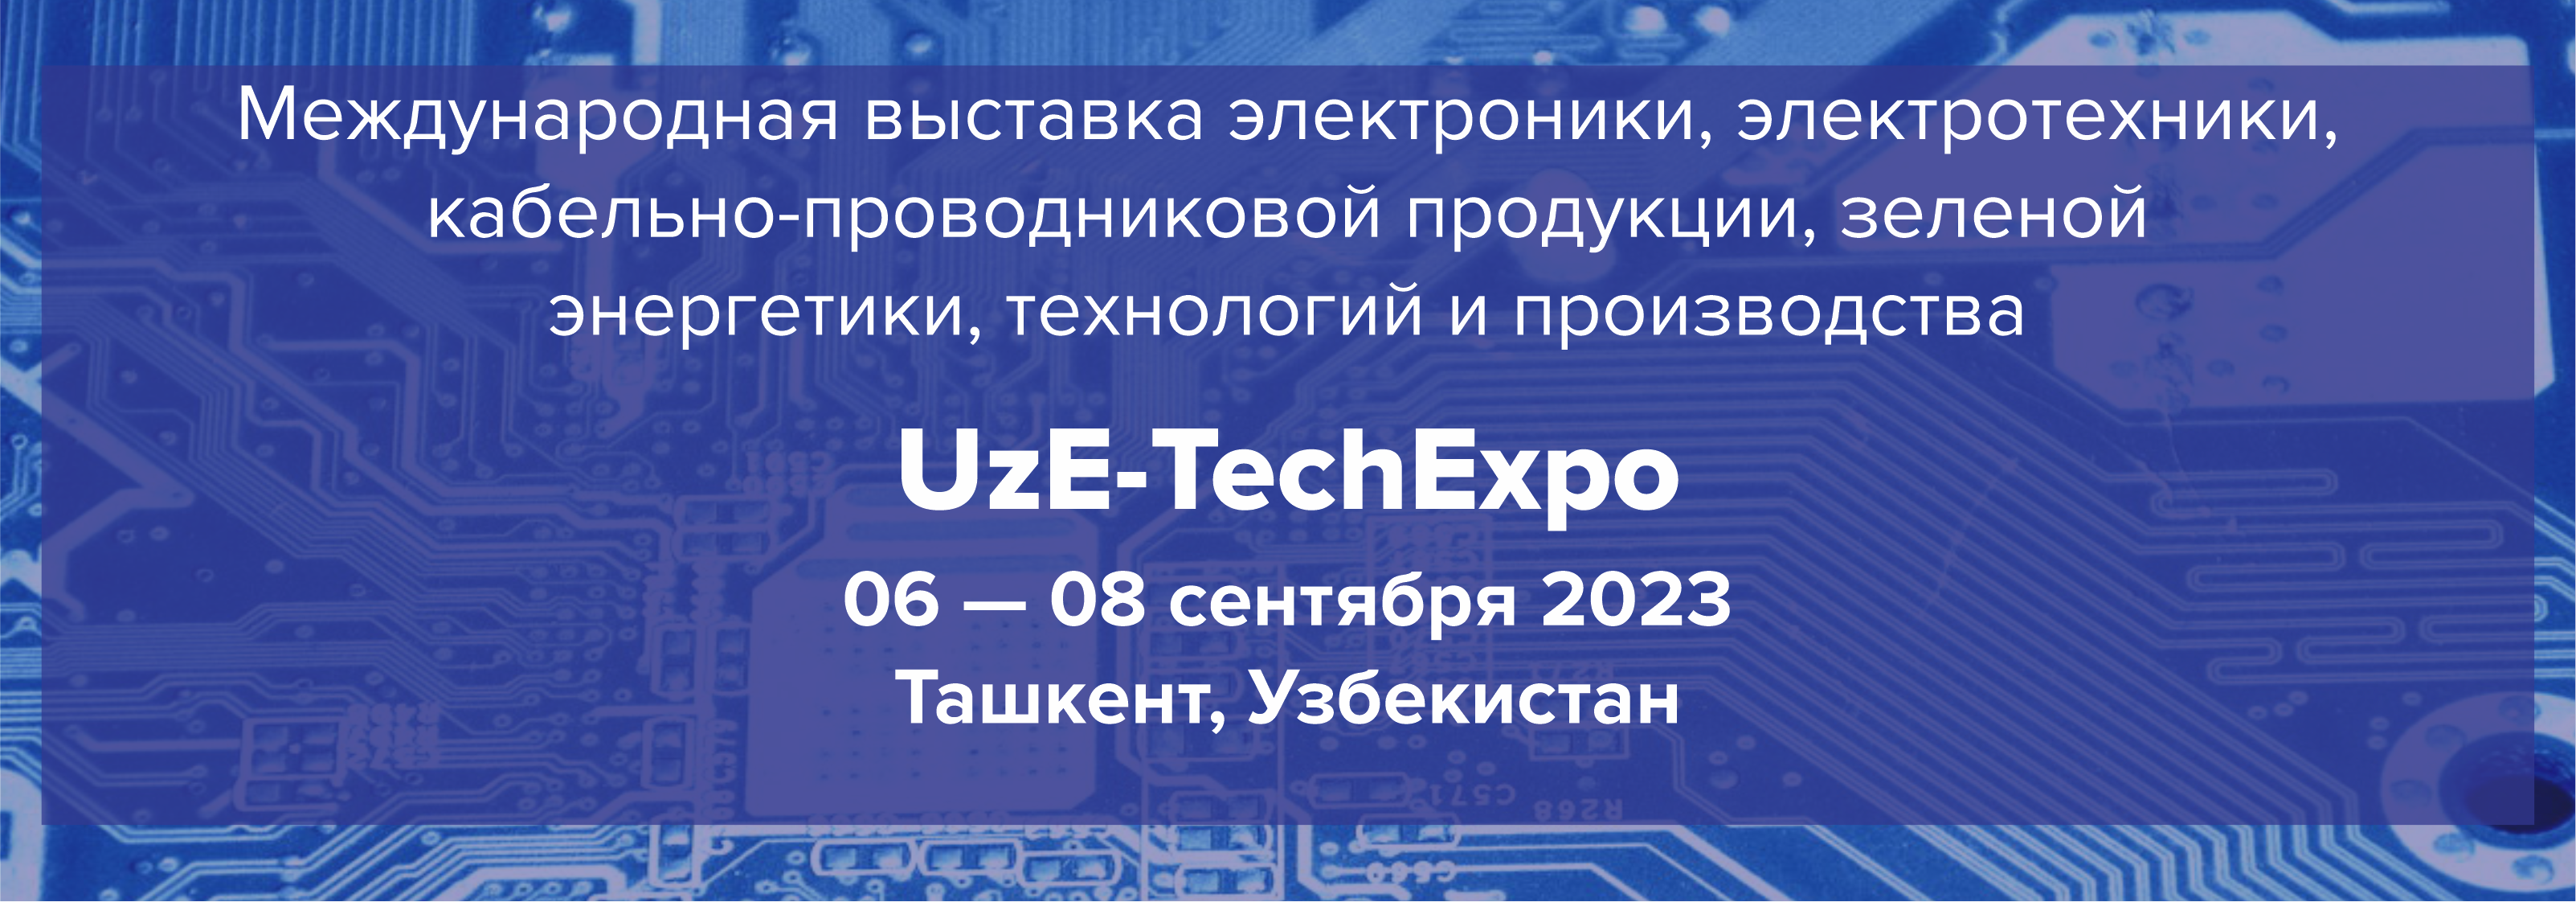 UzE-TechExpo 2023 presents novelties of the electronics world